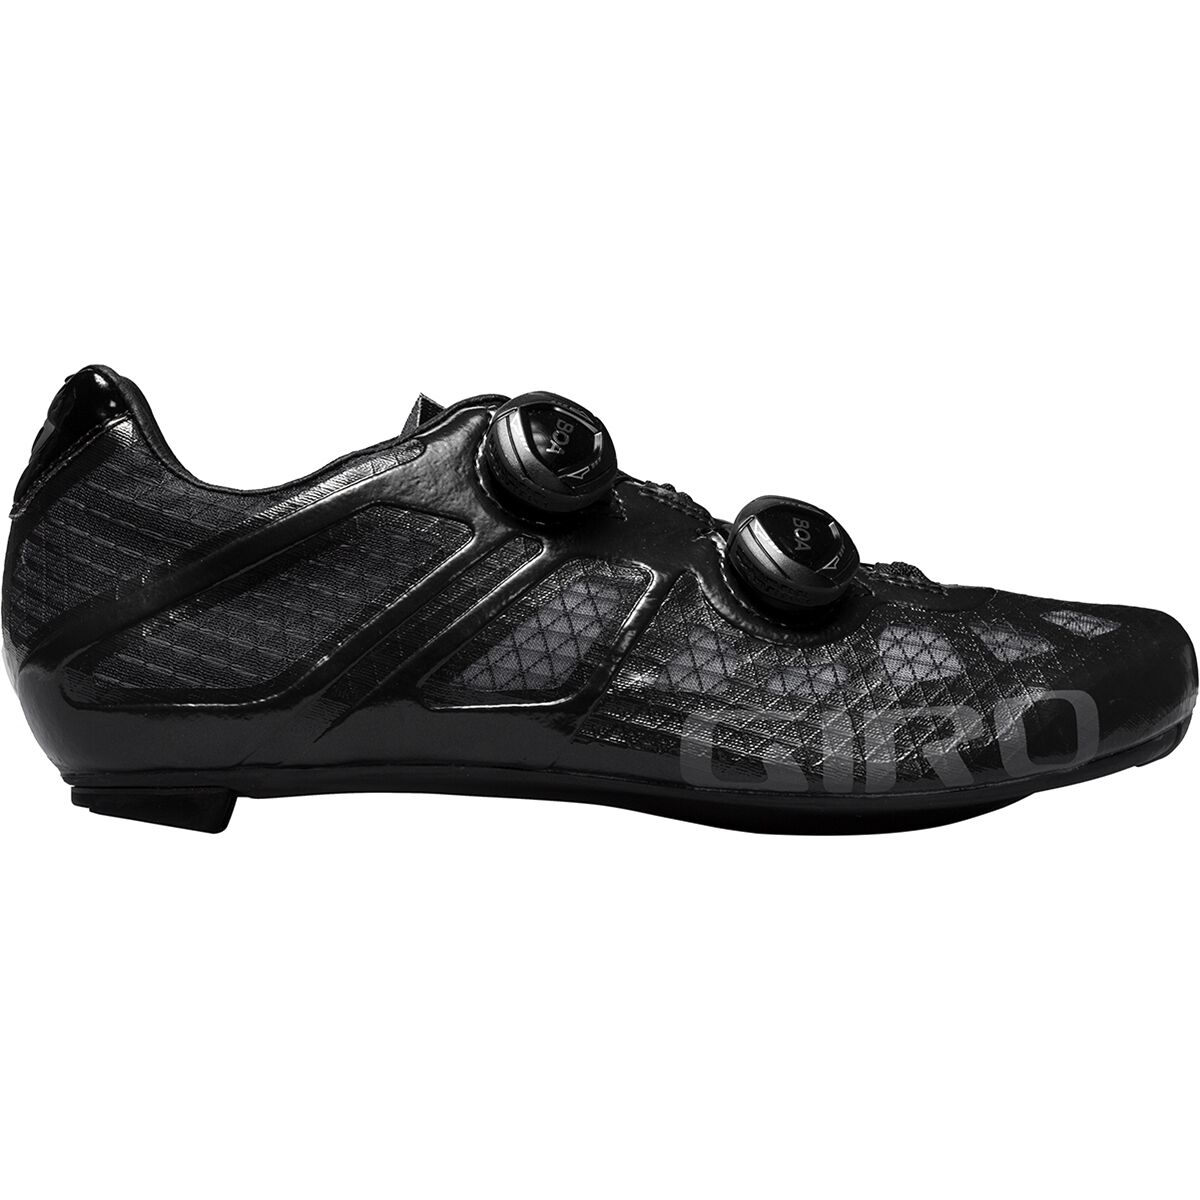 Giro Imperial Cycling Shoe - Men's Black, 44.5